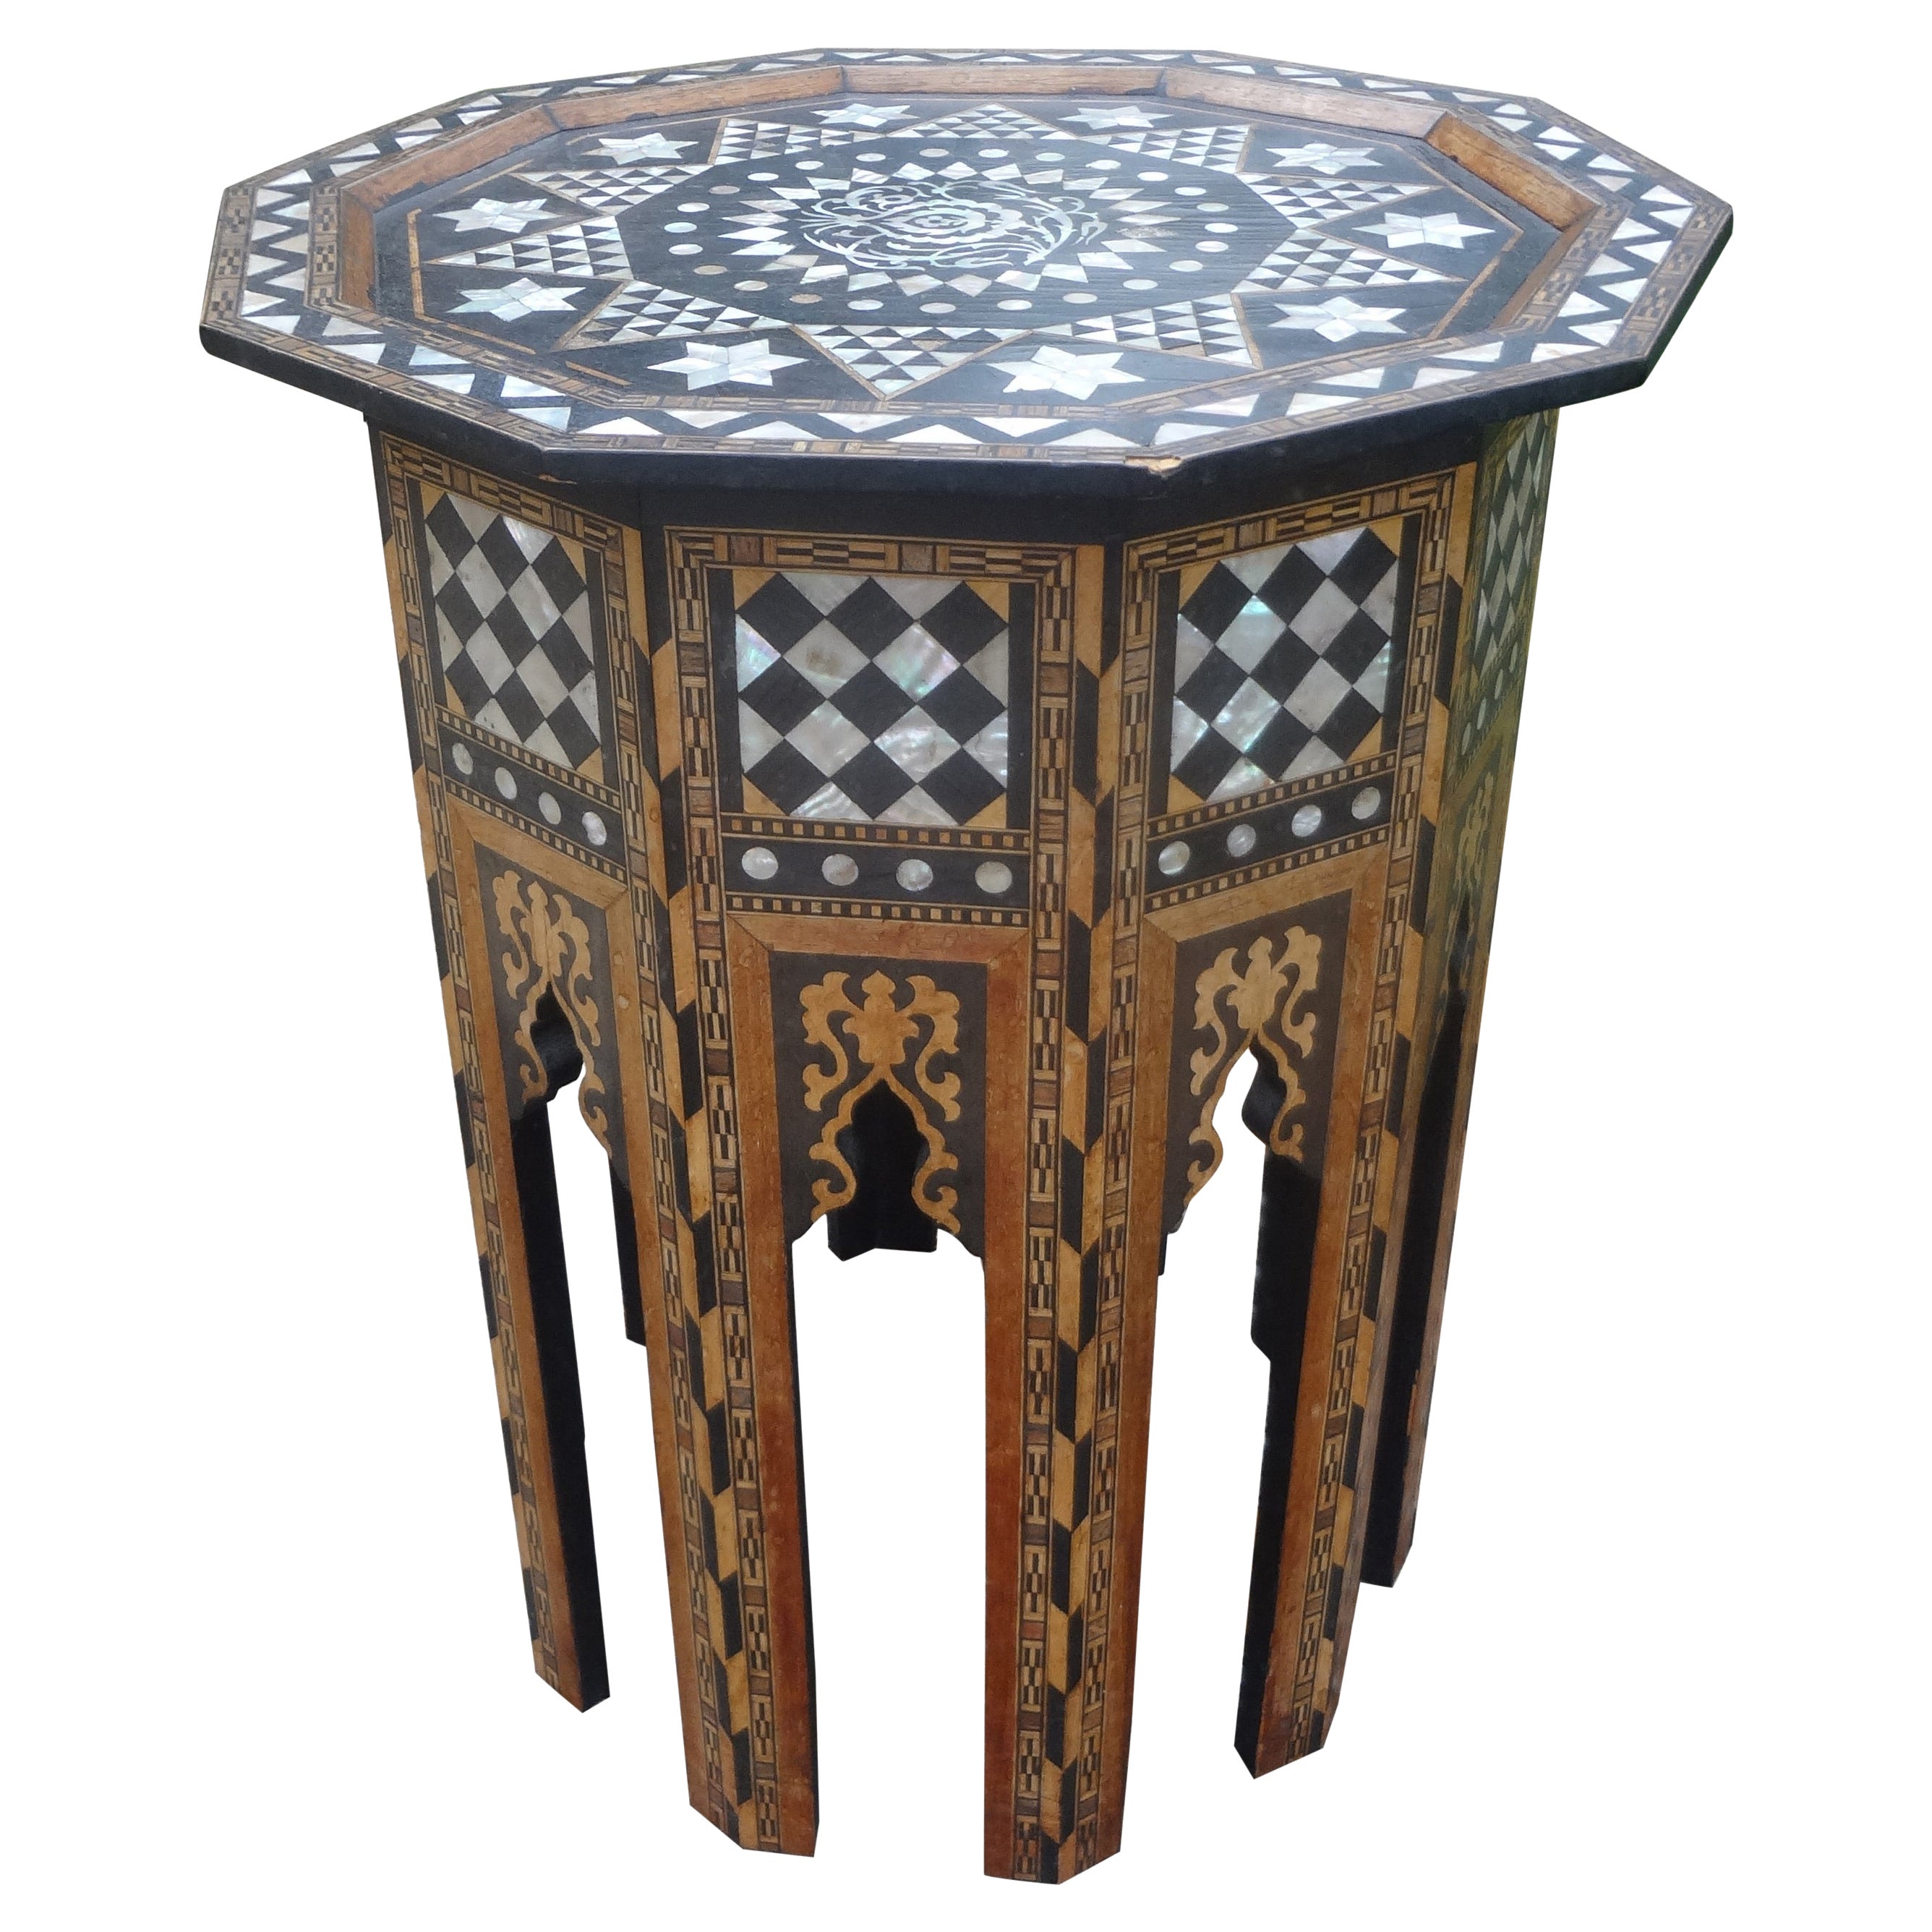 Ancienne table de style arabesque du Moyen-Orient incrustée de nacre